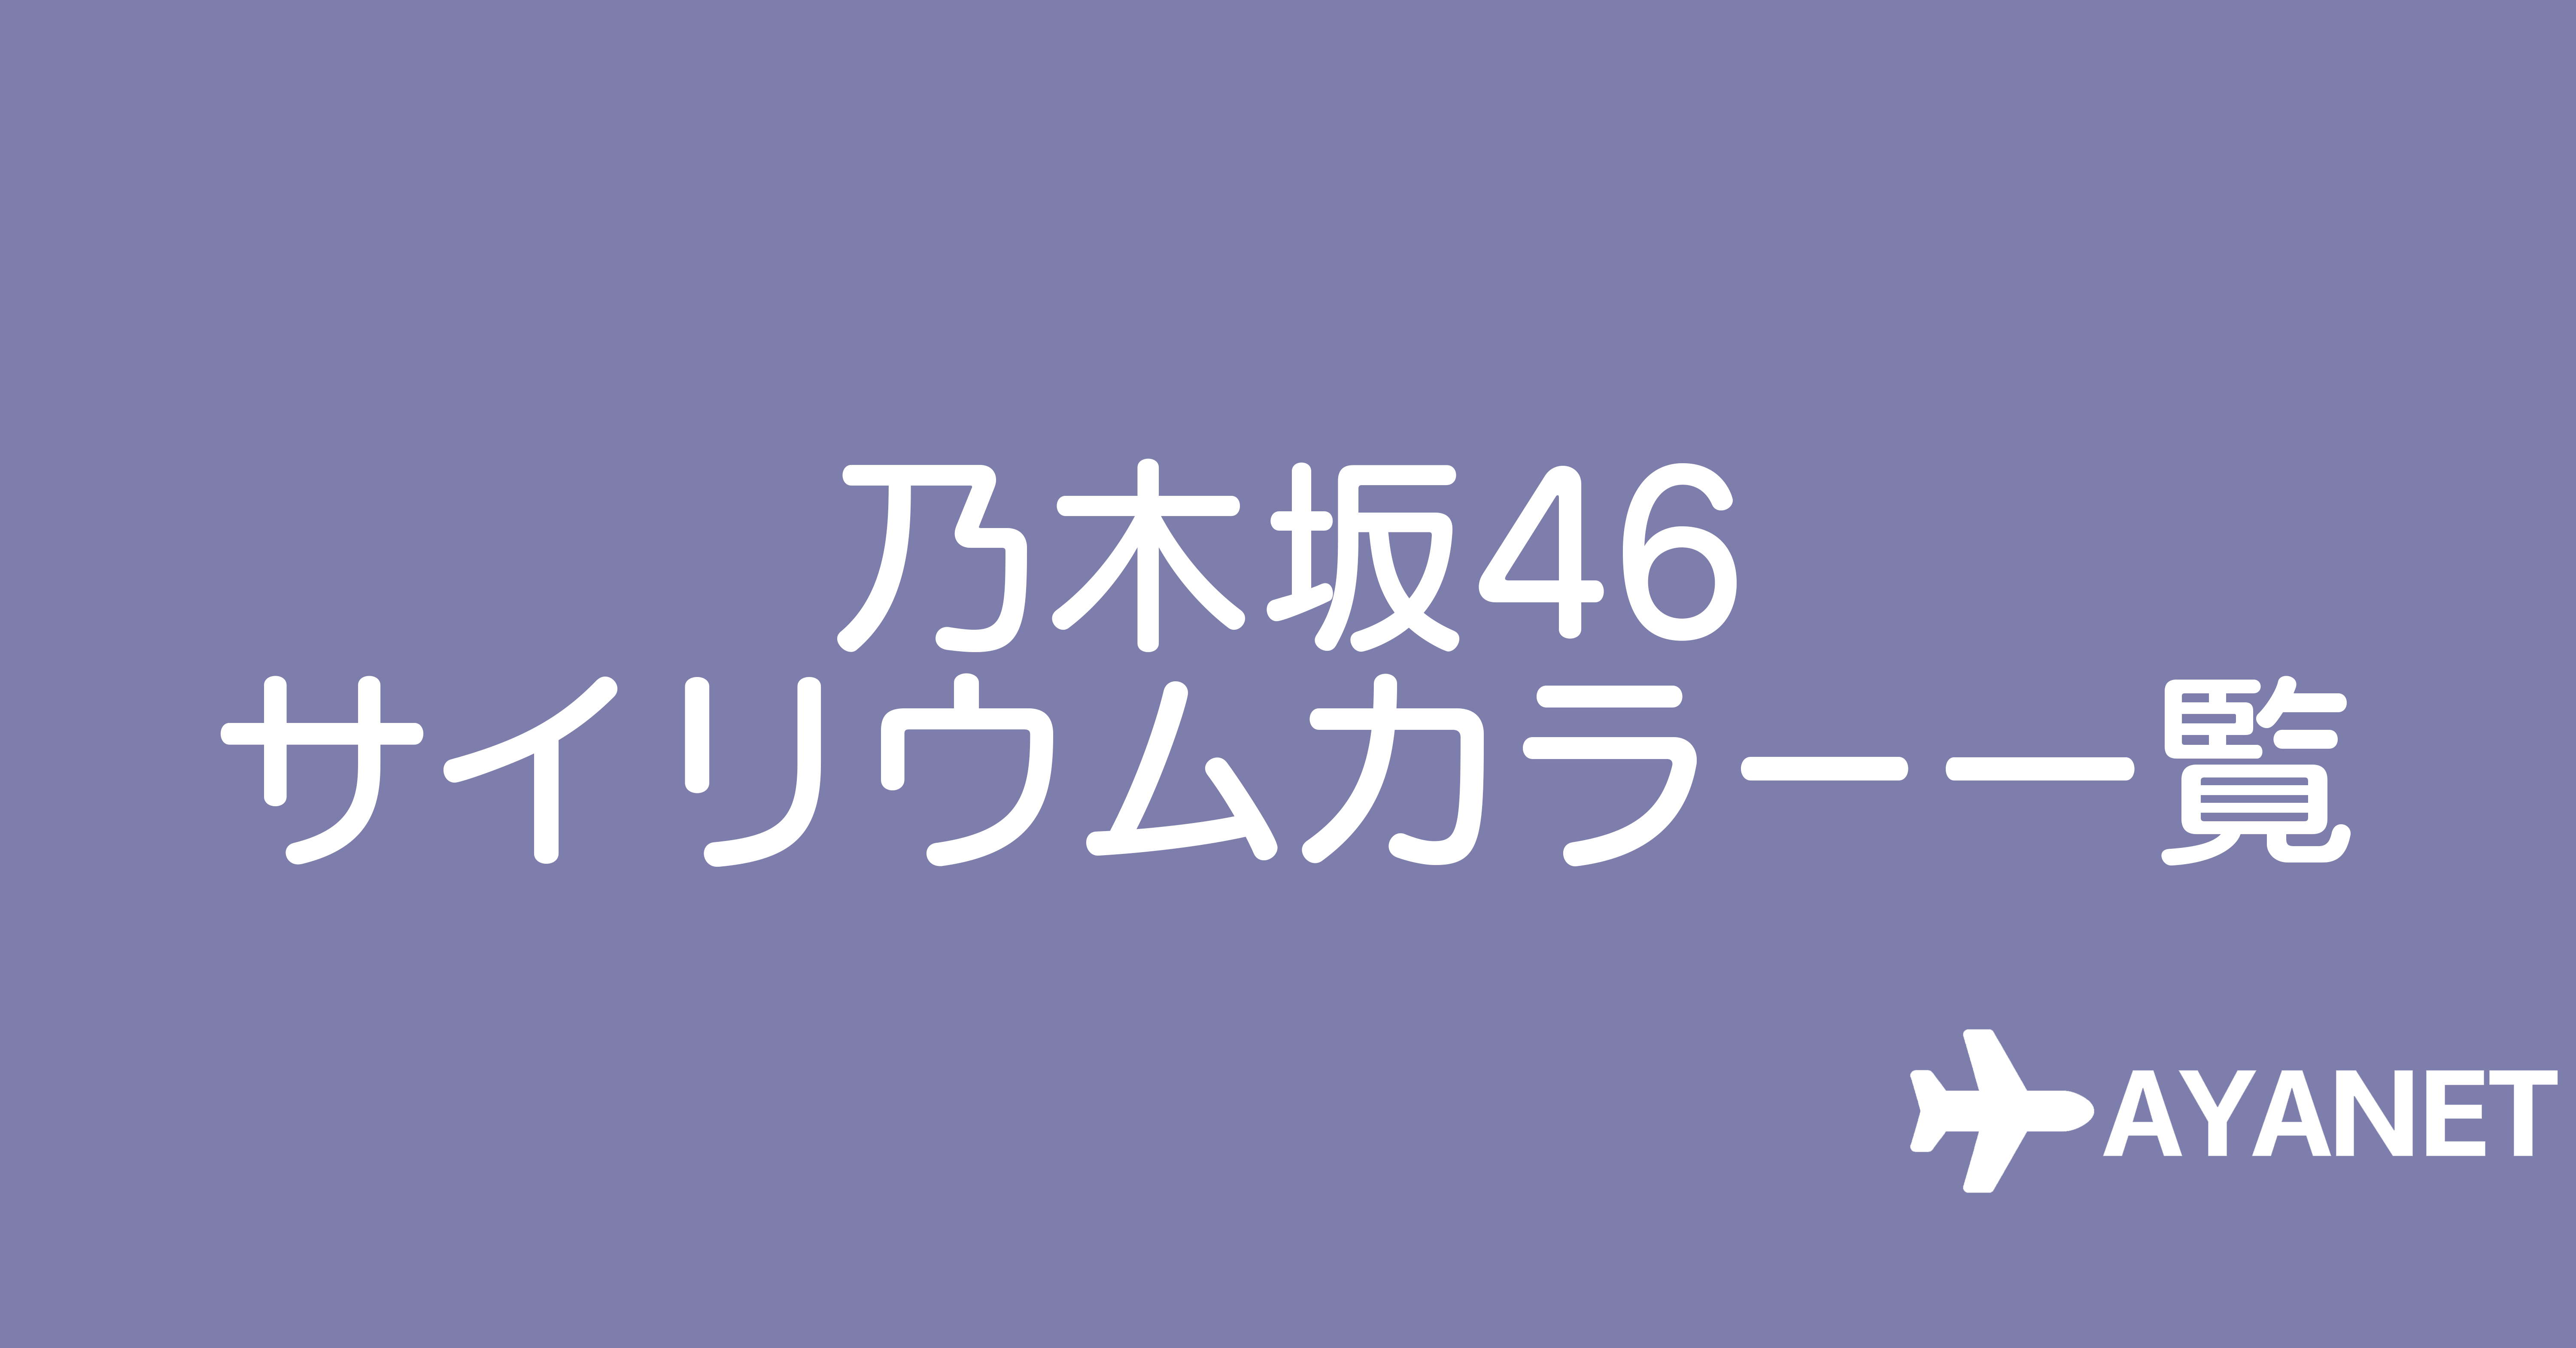 乃木坂46サイリウムカラー一覧表【2022年3月更新】